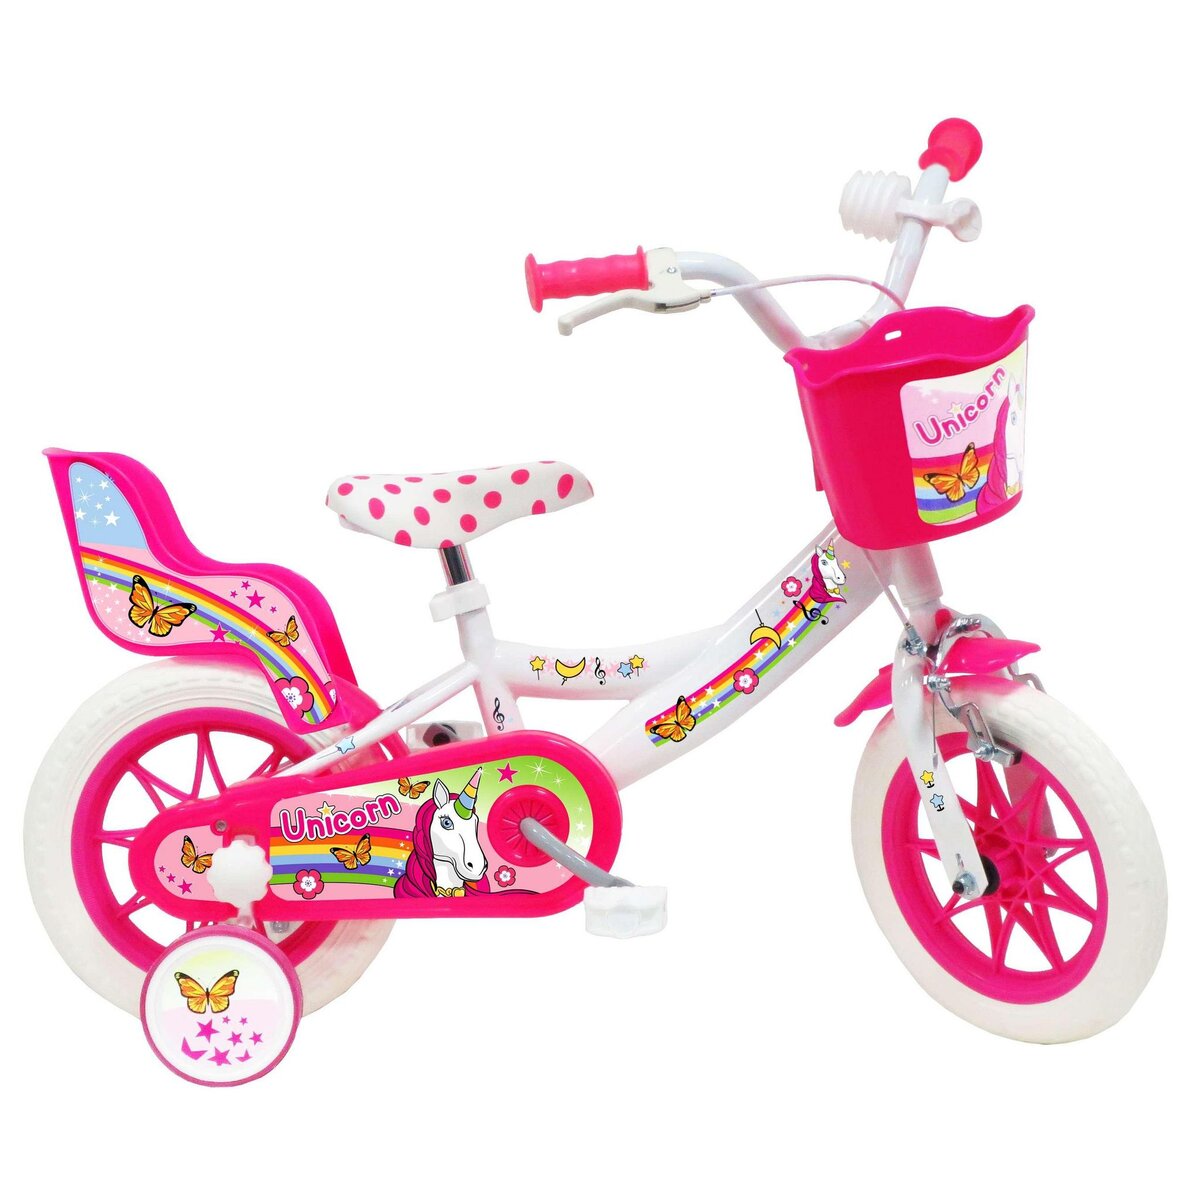  Vélo 12   Fille  LICORNE/UNICORN  pour enfant de 85/100 cm  avec stabilisateurs à molettes - 1 frein - Panier avant - Porte poupée arrière